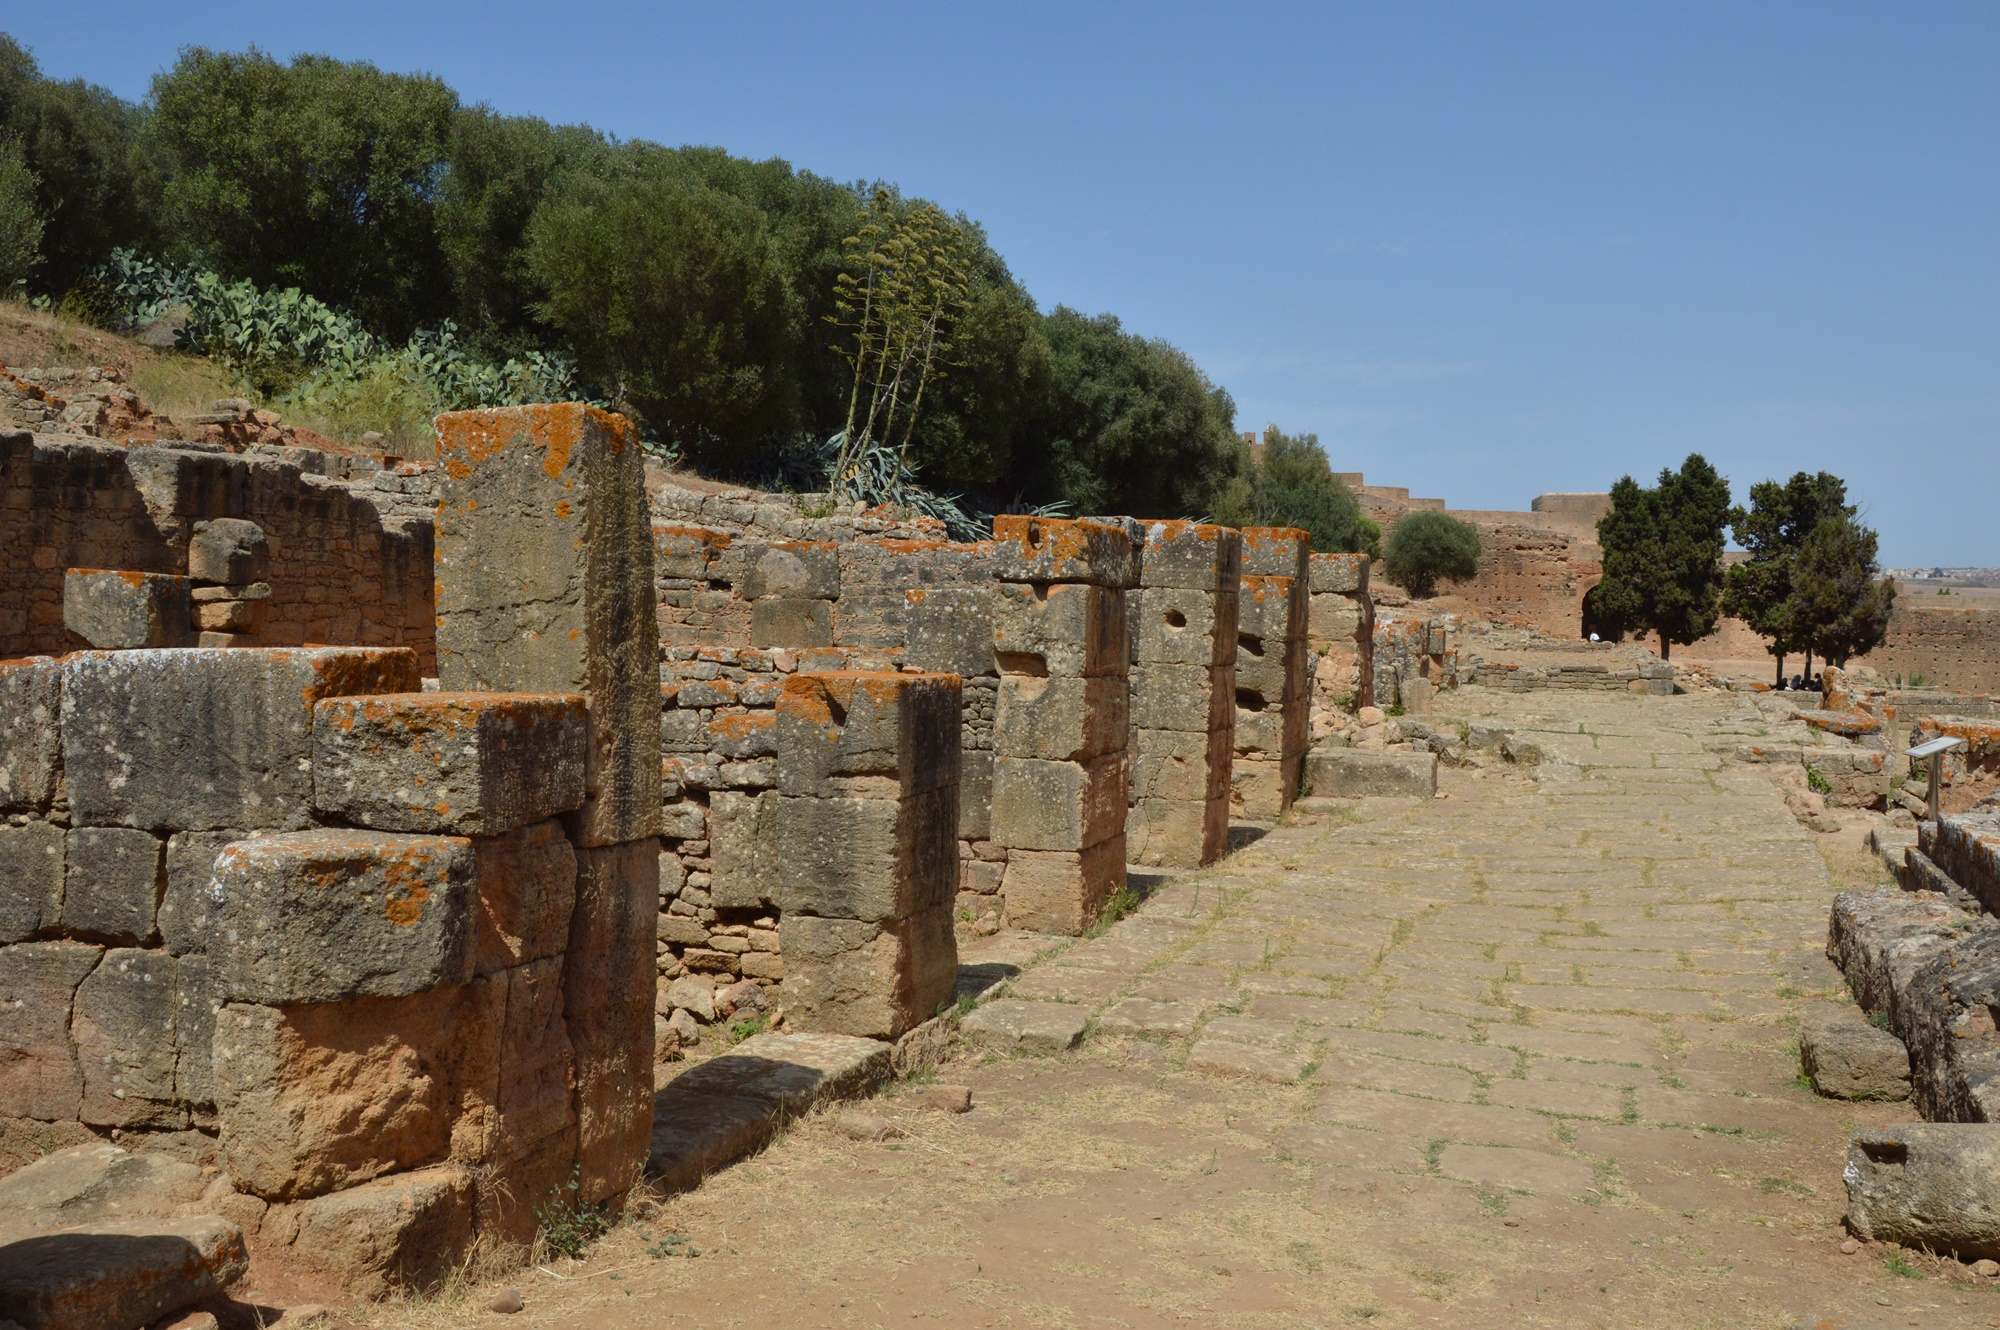 Улица древнего поселения Сала-Колония в Марокко